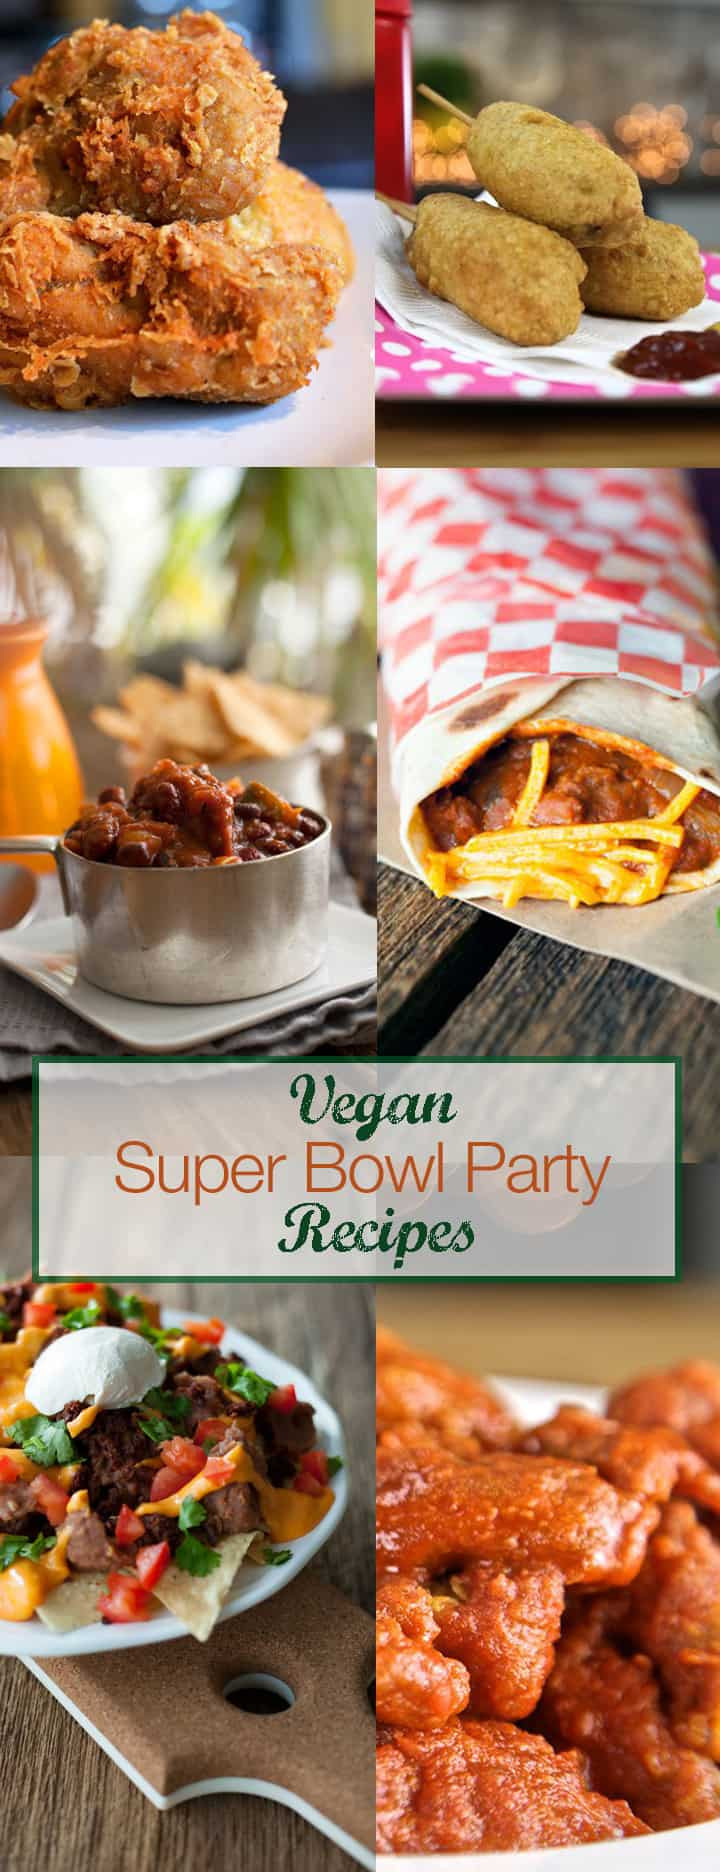 Vegetarian Super Bowl Recipes
 Easy Super Bowl Recipes VEGAN